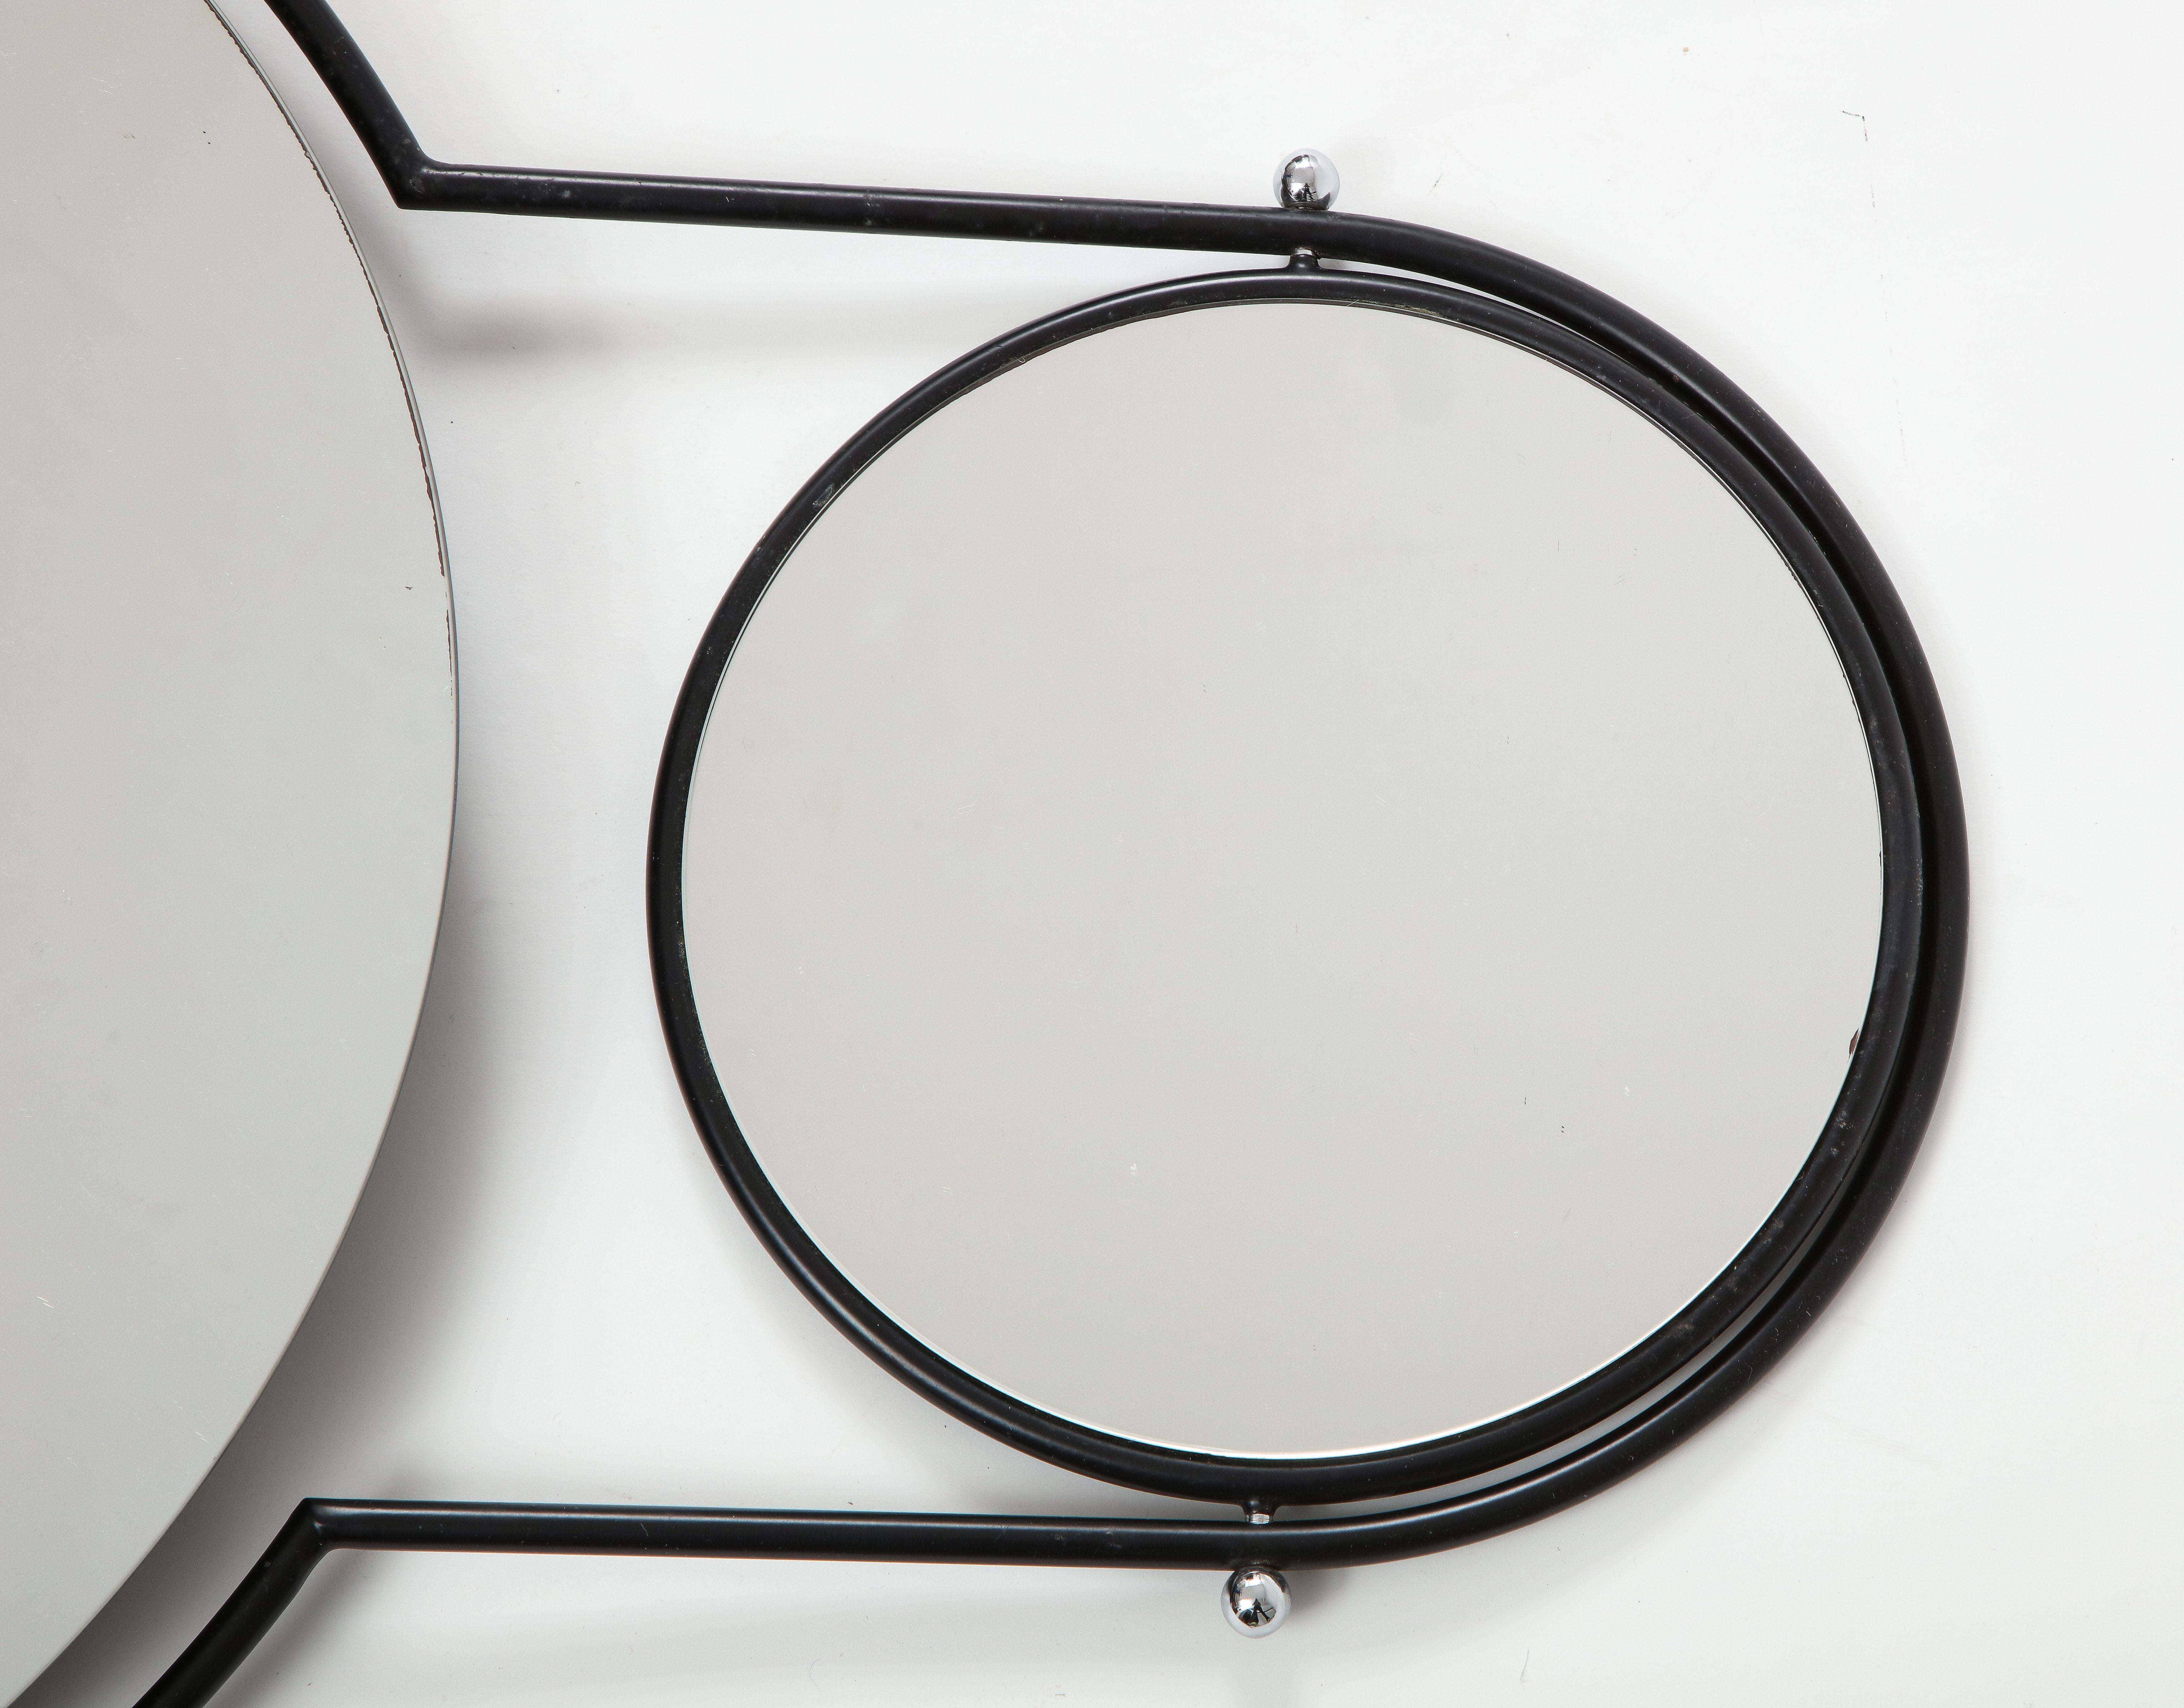 Minimalist Modernist 'Orbit' Wall Mirror by Rodney Kinsman for Bieffeplast